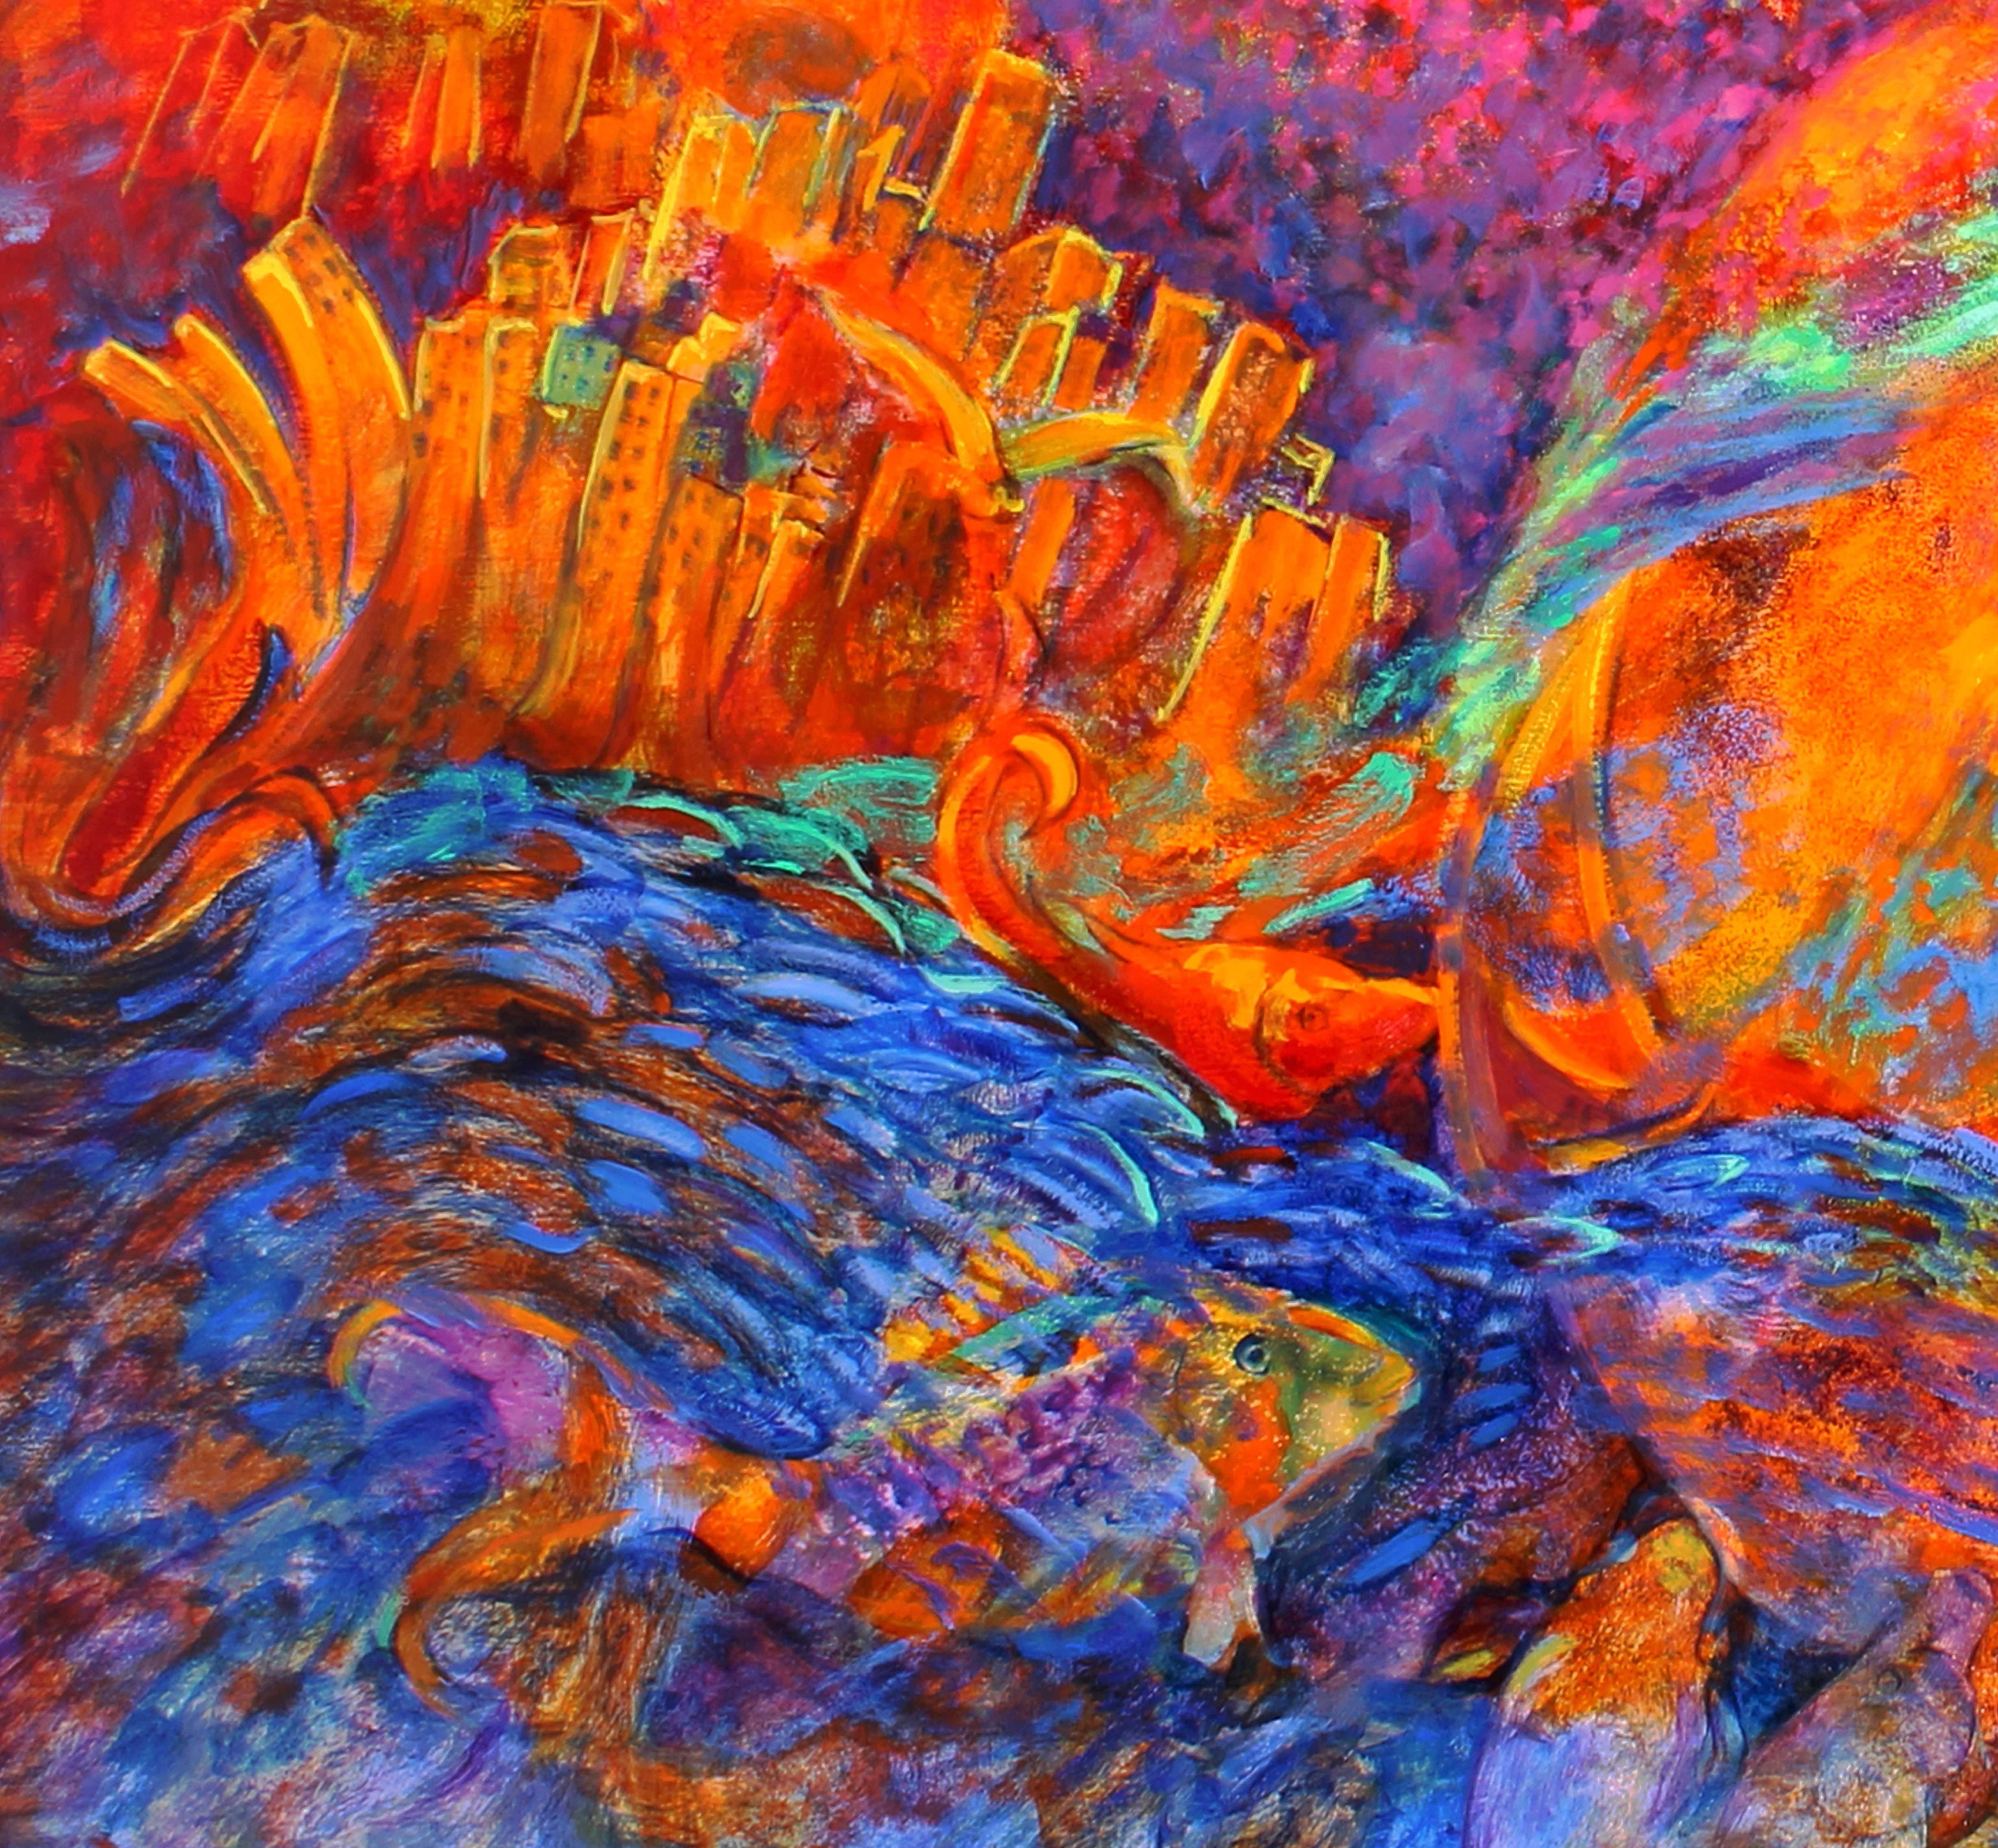 Magic World ist ein abstraktes Gemälde von Evelyne Ballestra, einer zeitgenössischen französischen Malerin. Dieses farbenfrohe expressionistische Gemälde spiegelt die Art und Weise wider, wie der Künstler die Welt sieht, als ein Gewirr von Gebäuden,